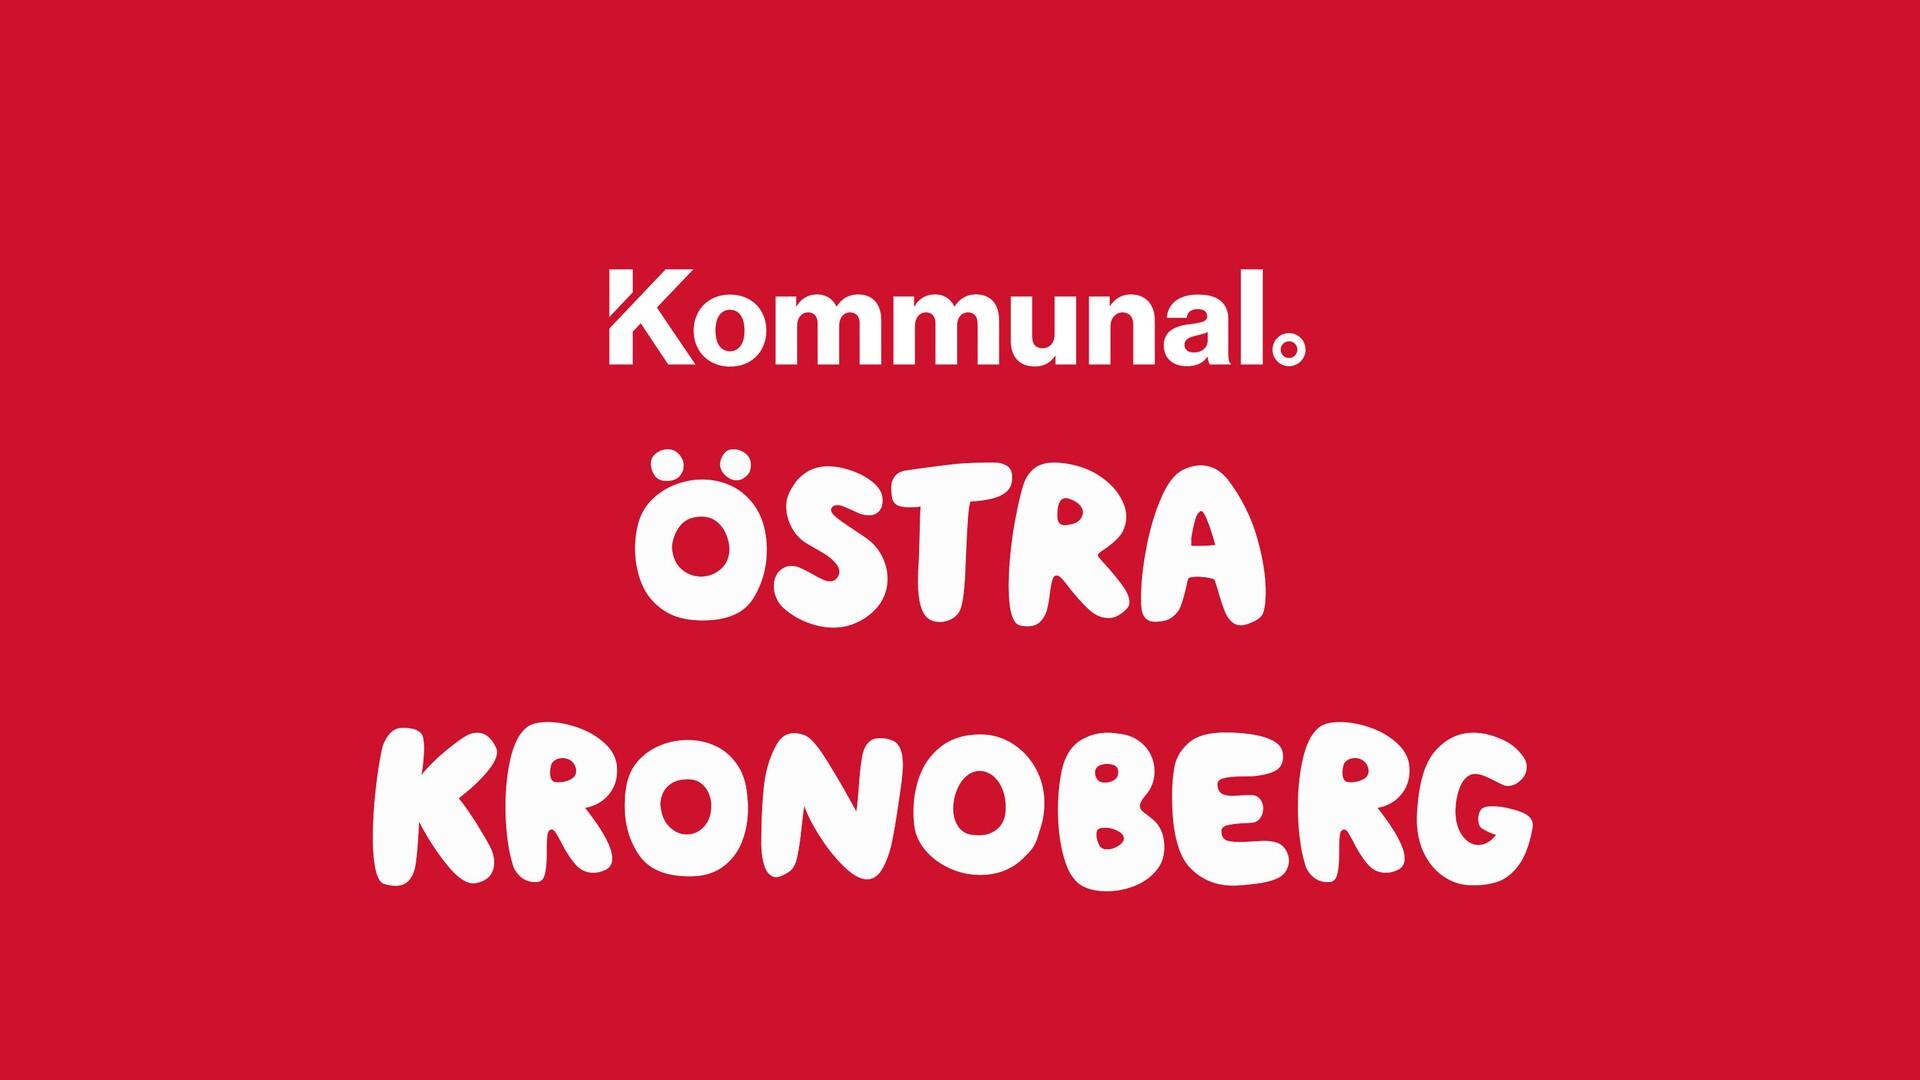 Kommunal Östra Kronoberg